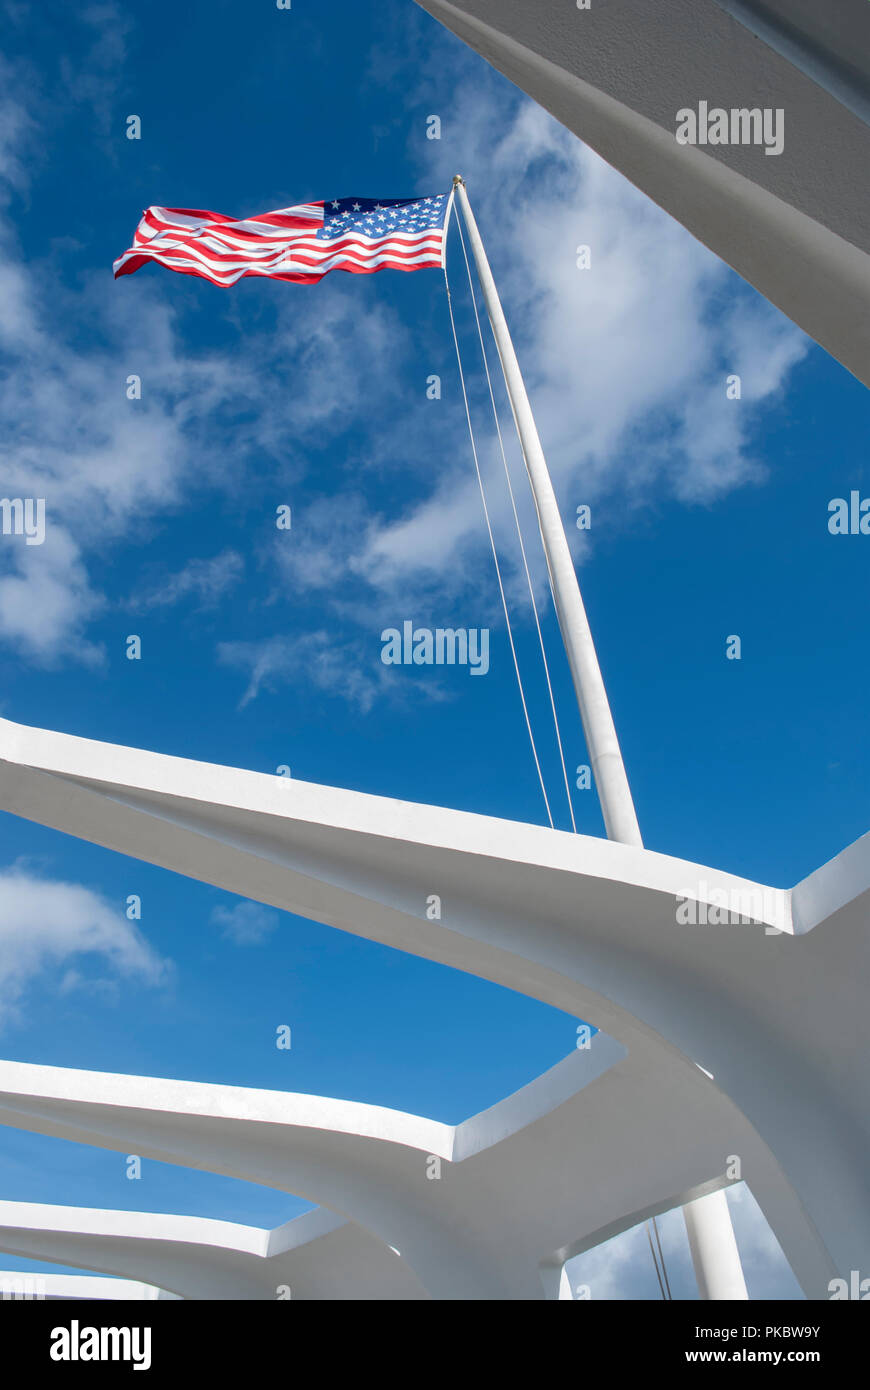 Vista de la bandera americana a través de la abertura en el techo en el Arizona Memorial en Pearl Harbor, Hawai, Estados Unidos. De diciembre de 2010. Foto de stock